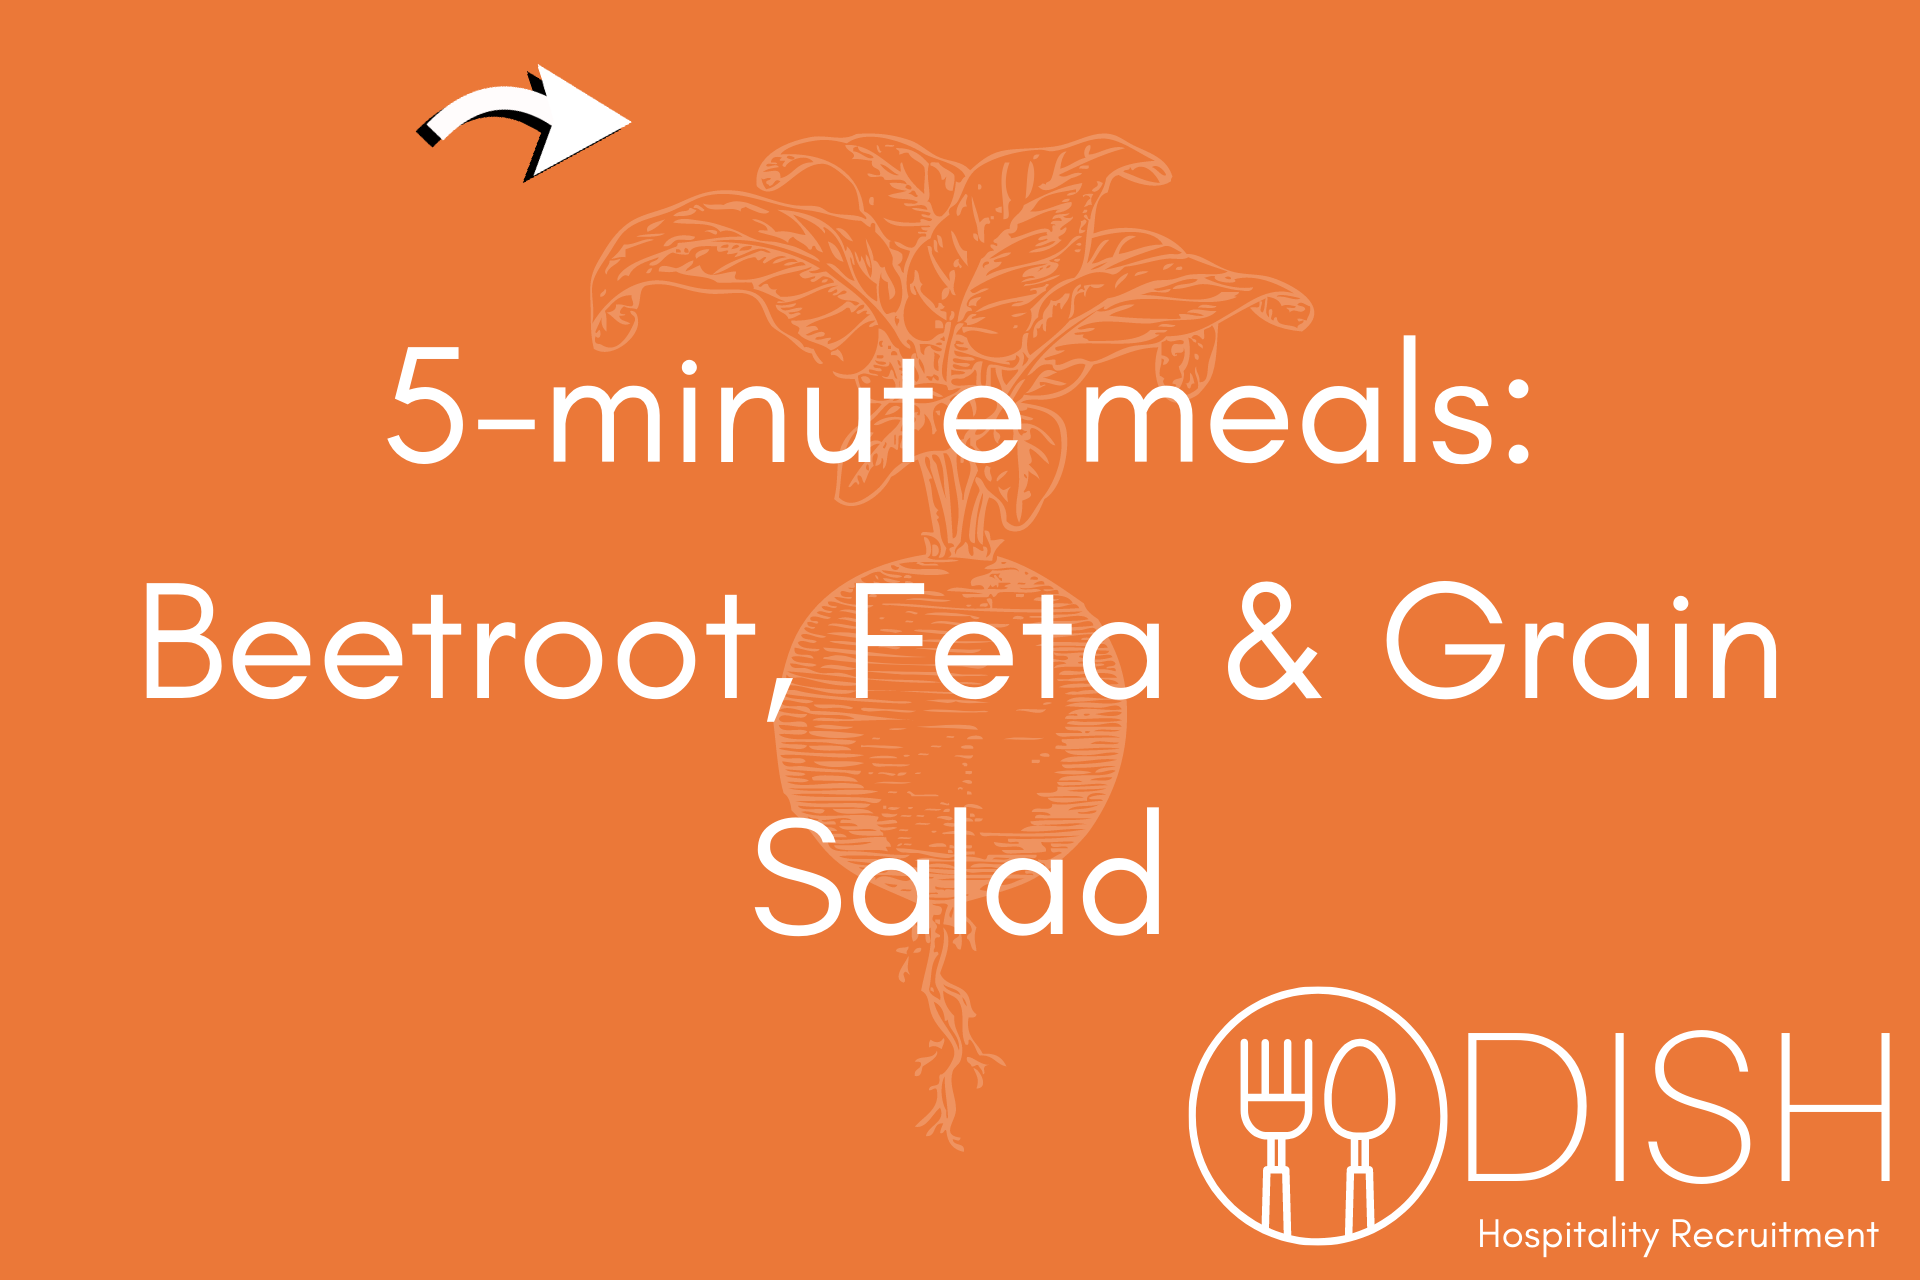 5 Minute Meal of the Week: Beetroot, Feta & Grain Salad